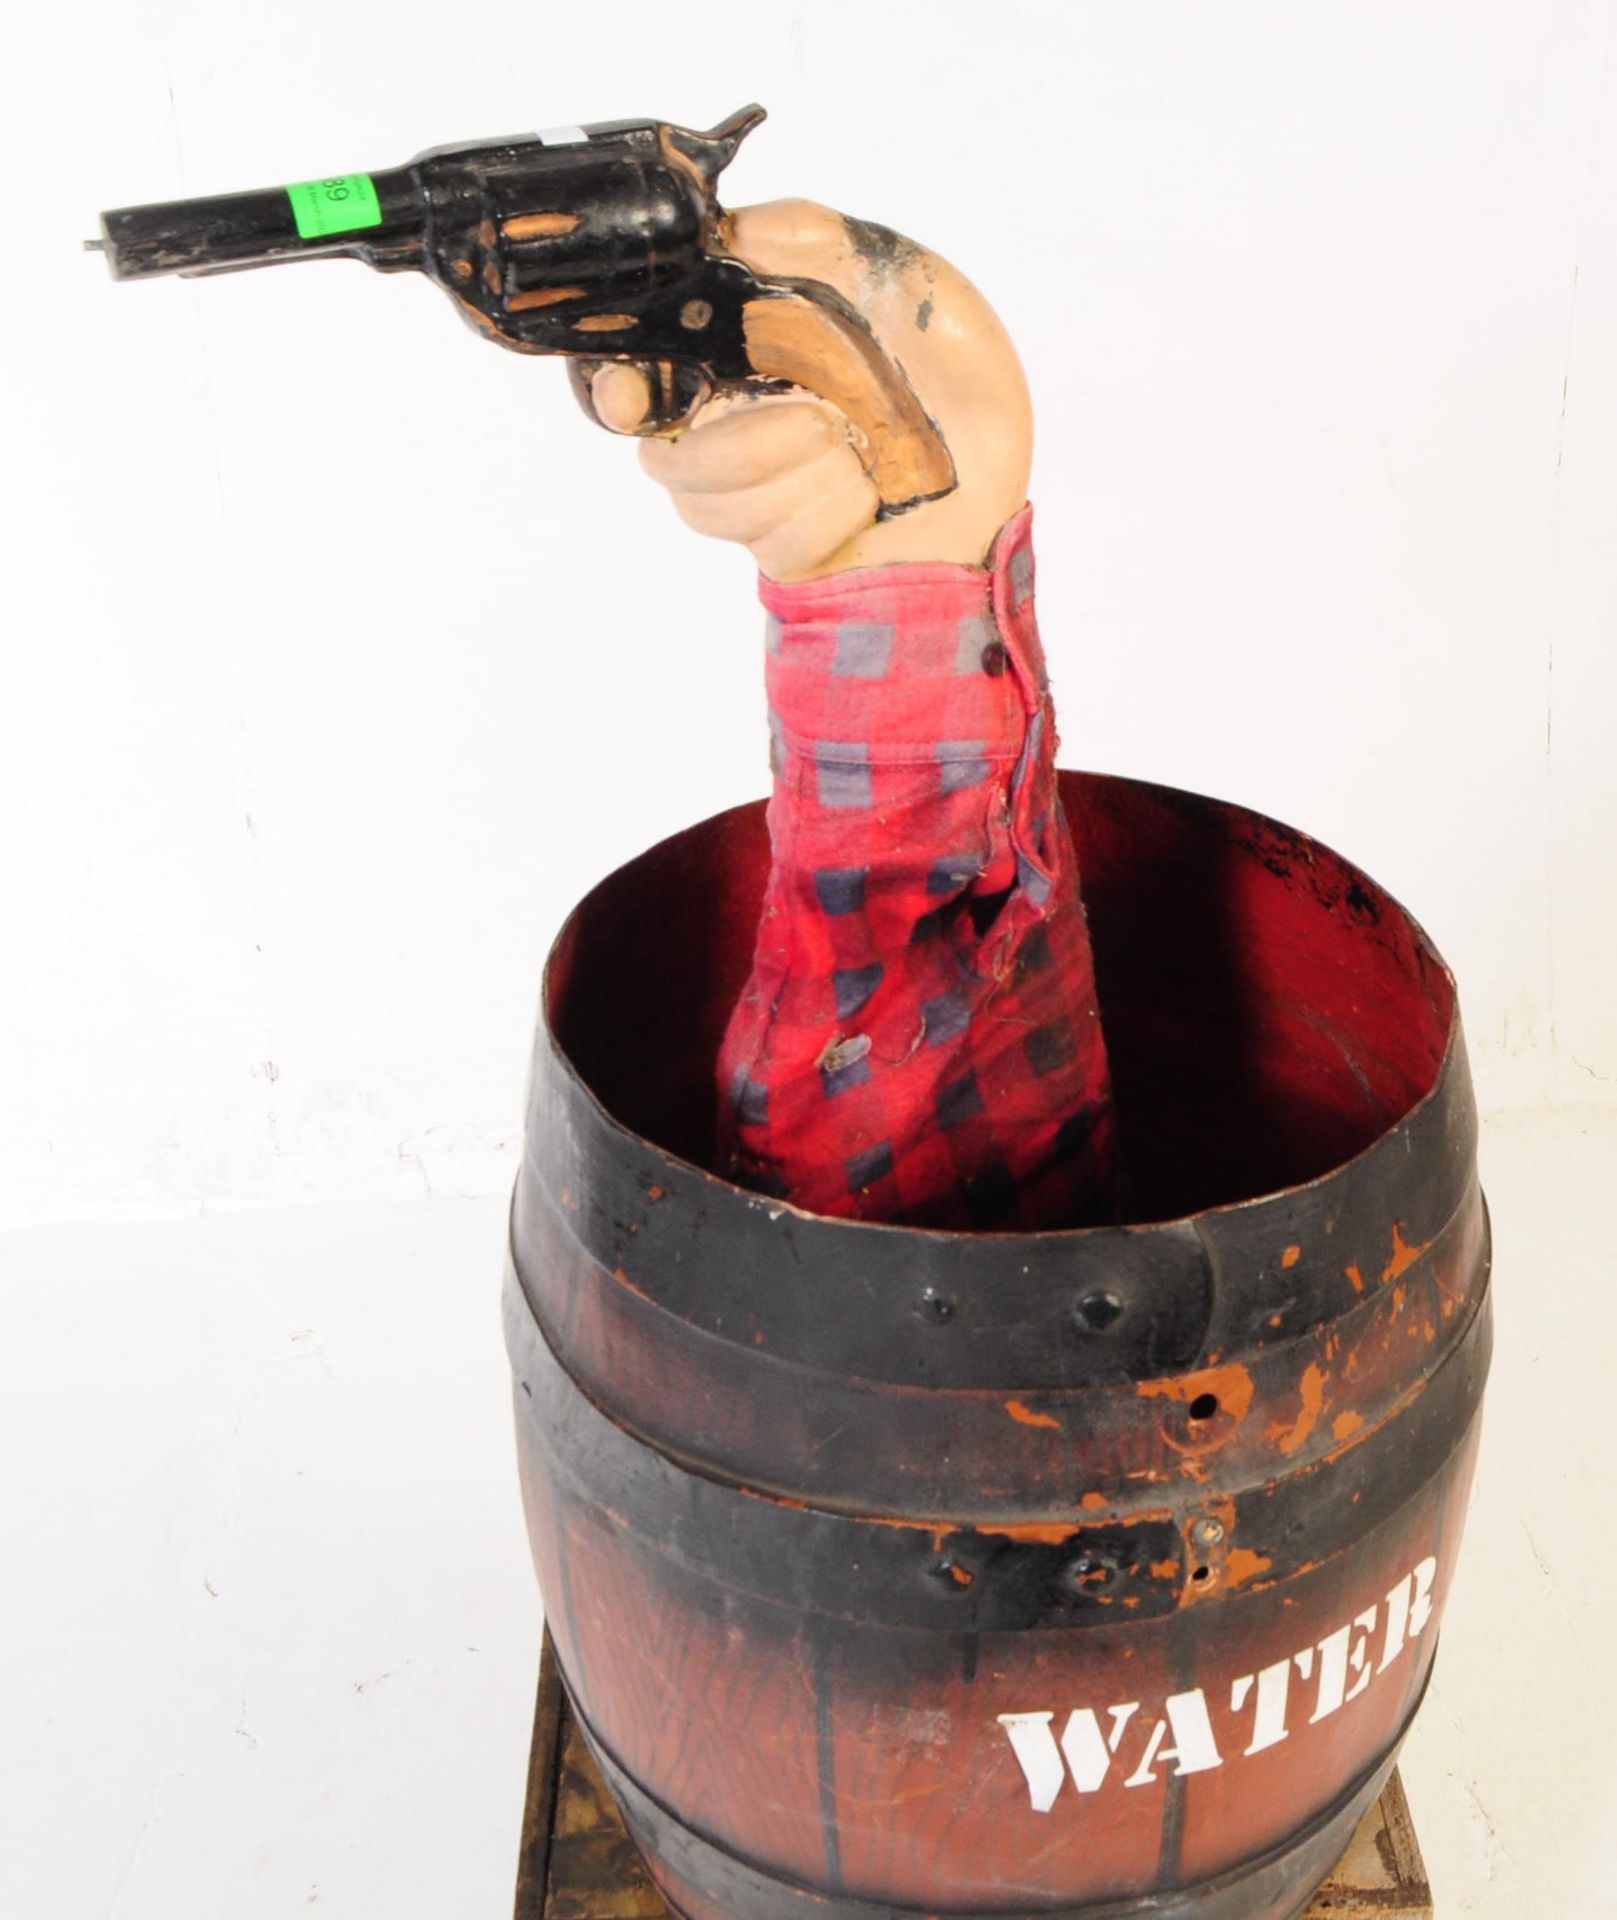 FAIRGROUND / CARNIVAL WATER GUN FAIRGROUND AMUSEMENT GAME - Bild 3 aus 7